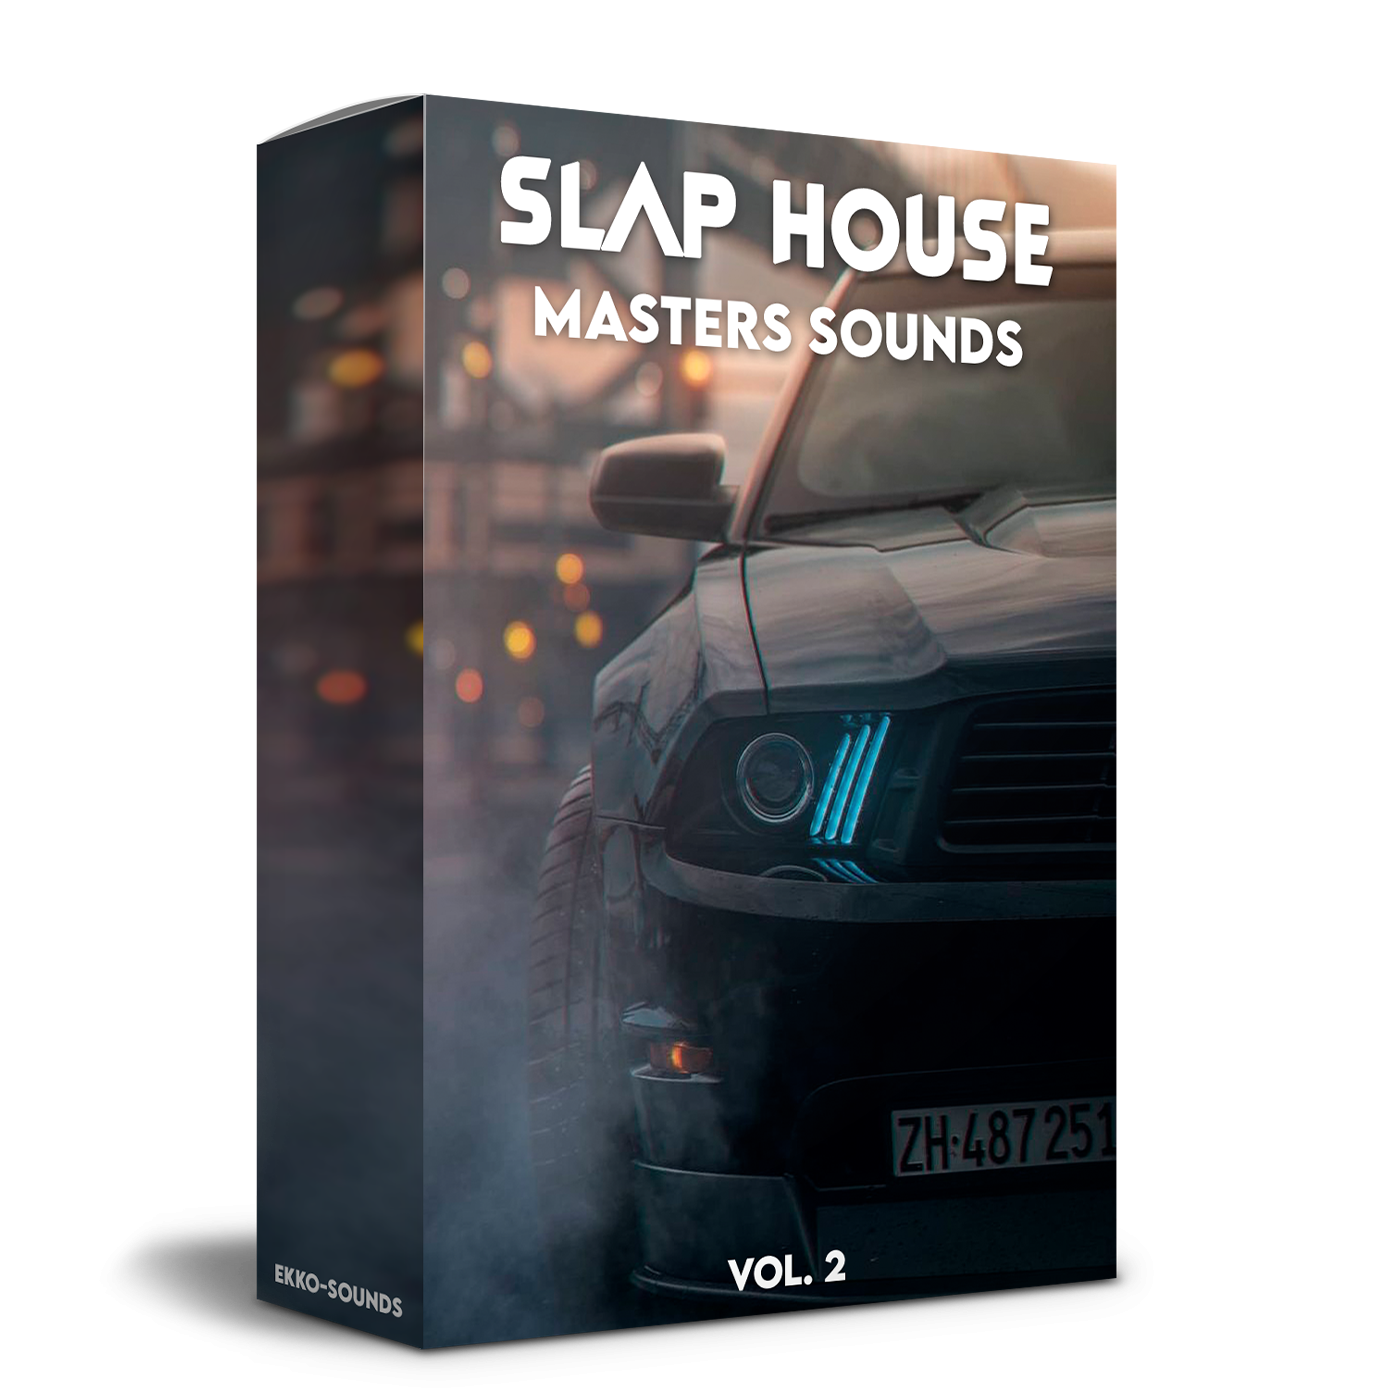 Slap House Masters Sounds Vol. 2